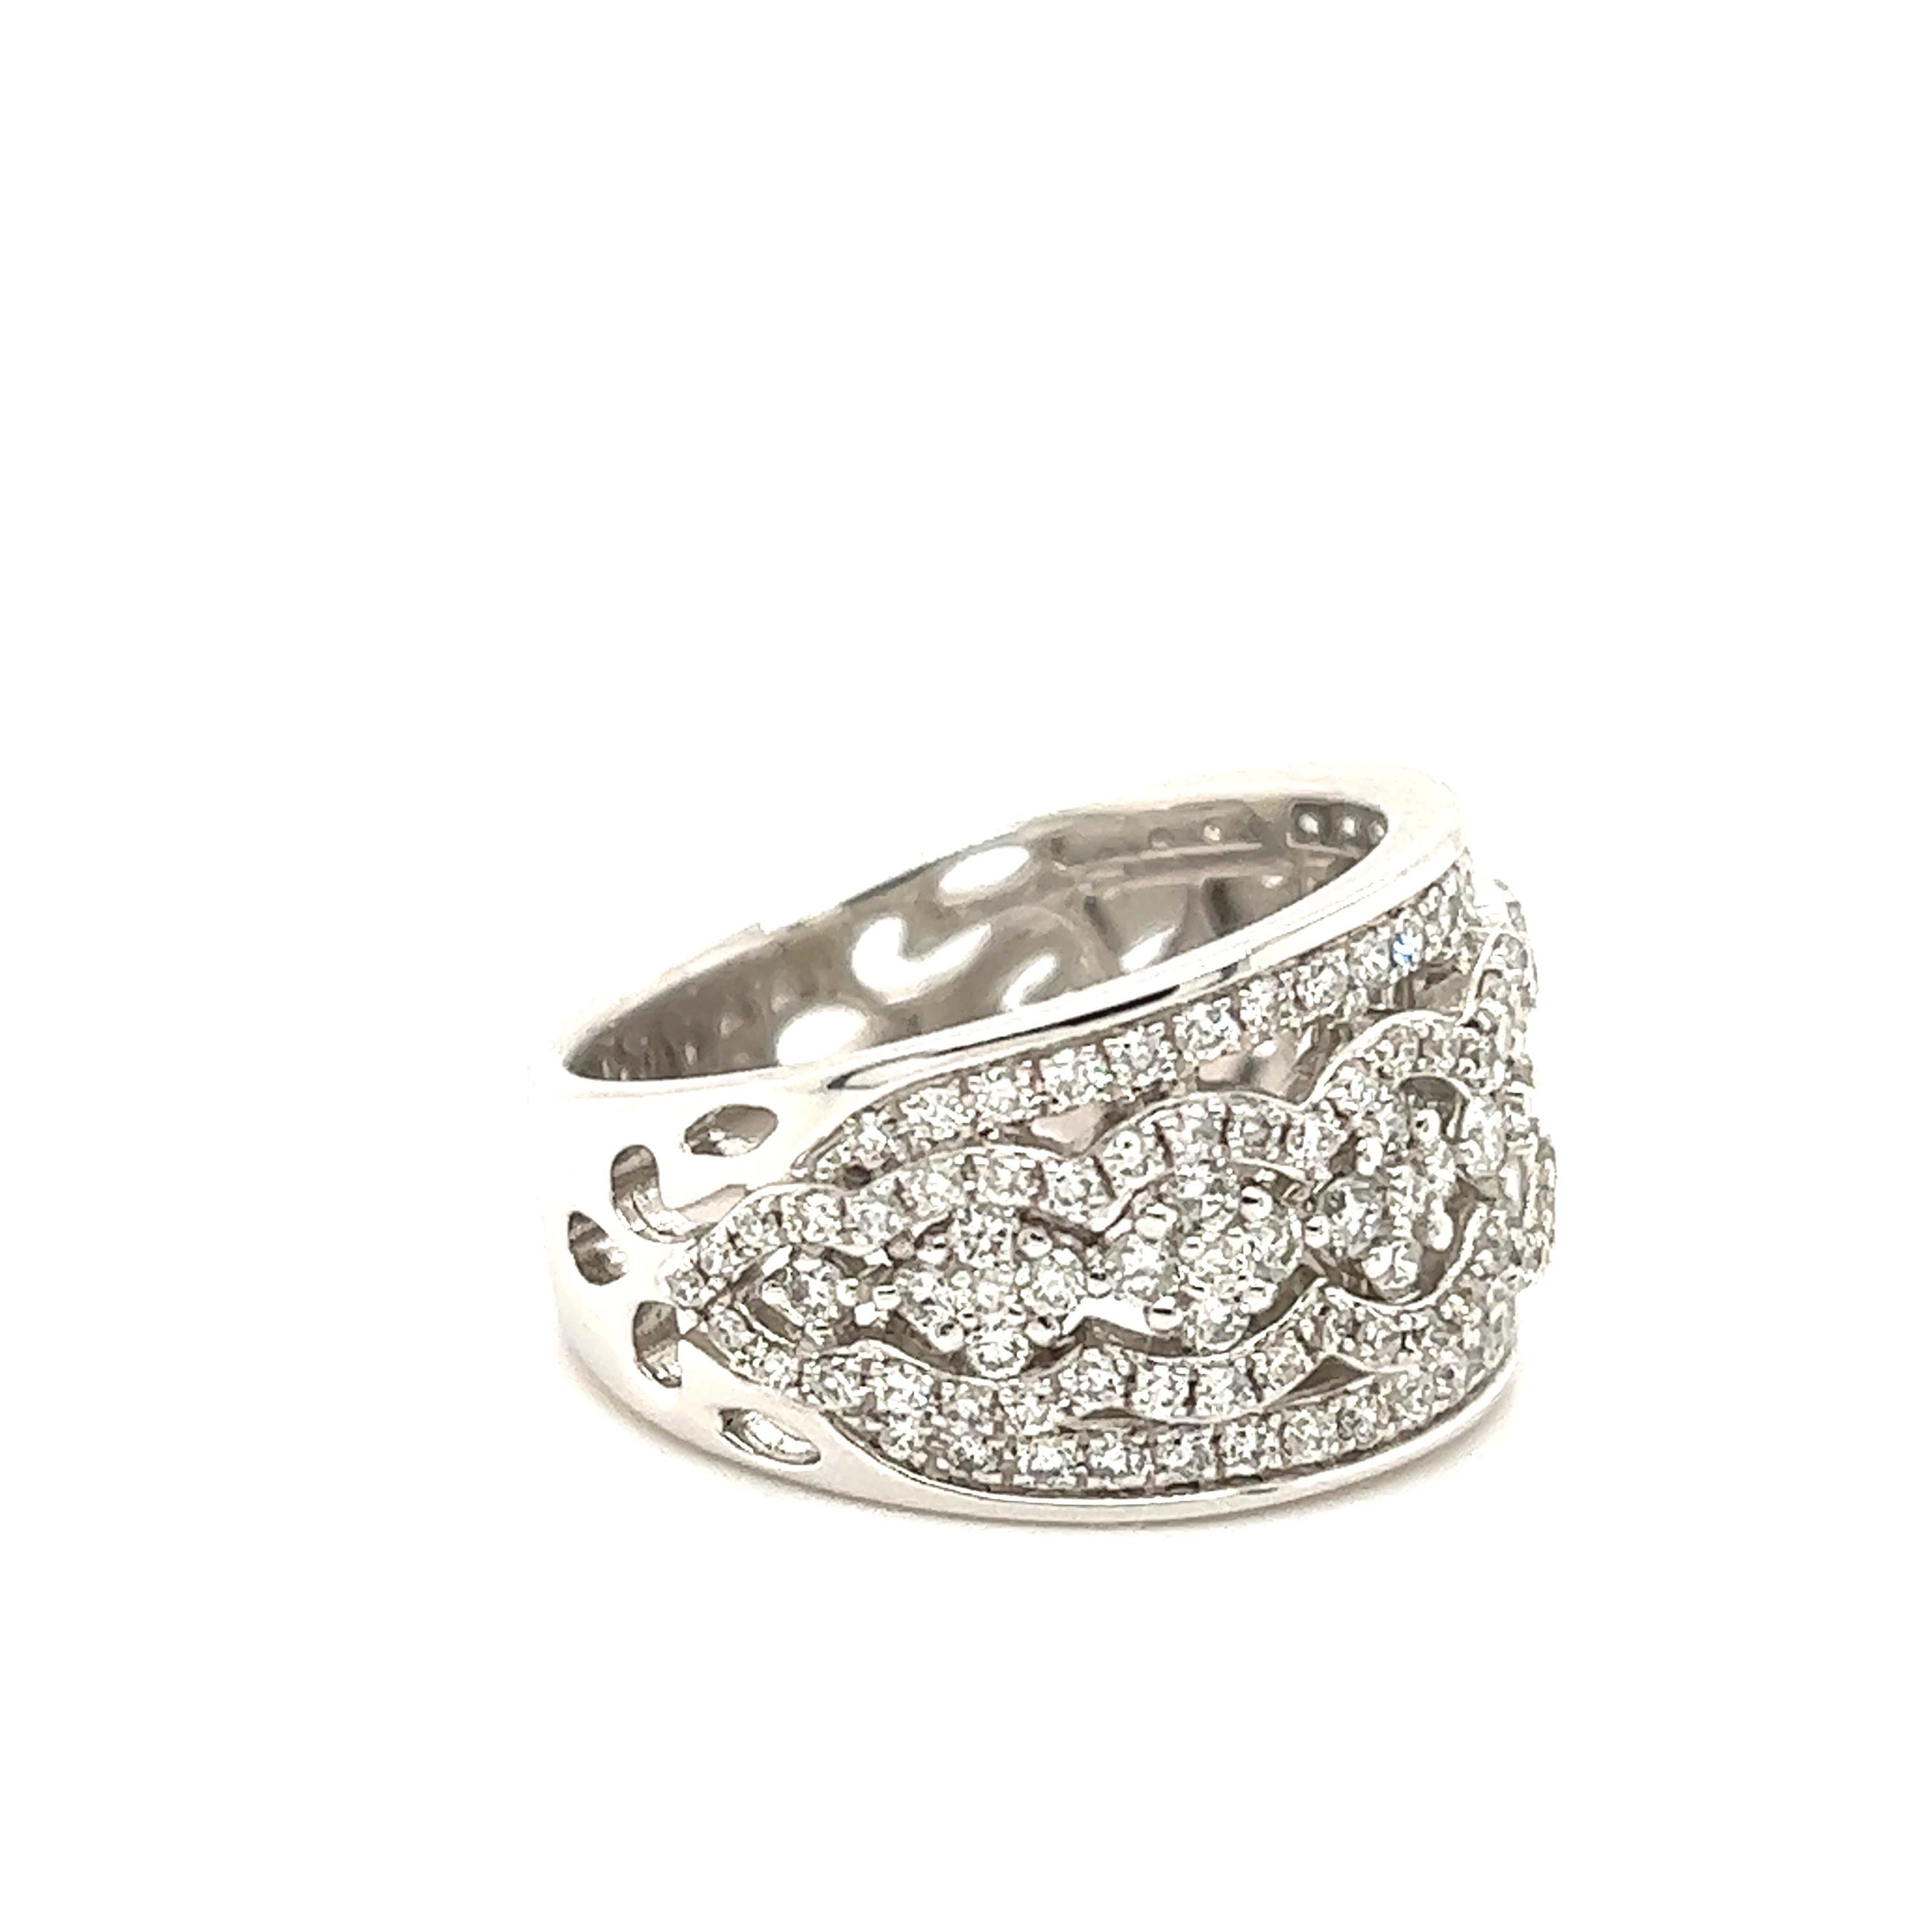 Schöner Ring aus 14k Weißgold. Der Ring hat ein breites Banddesign, da die obere Hälfte 12 mm misst. Die Marke verjüngt sich, da sie an der Basis des Schaftes 6 mm misst. Der Ring ist mit wunderschönen Diamanten von ca. 2,01 Karat im runden